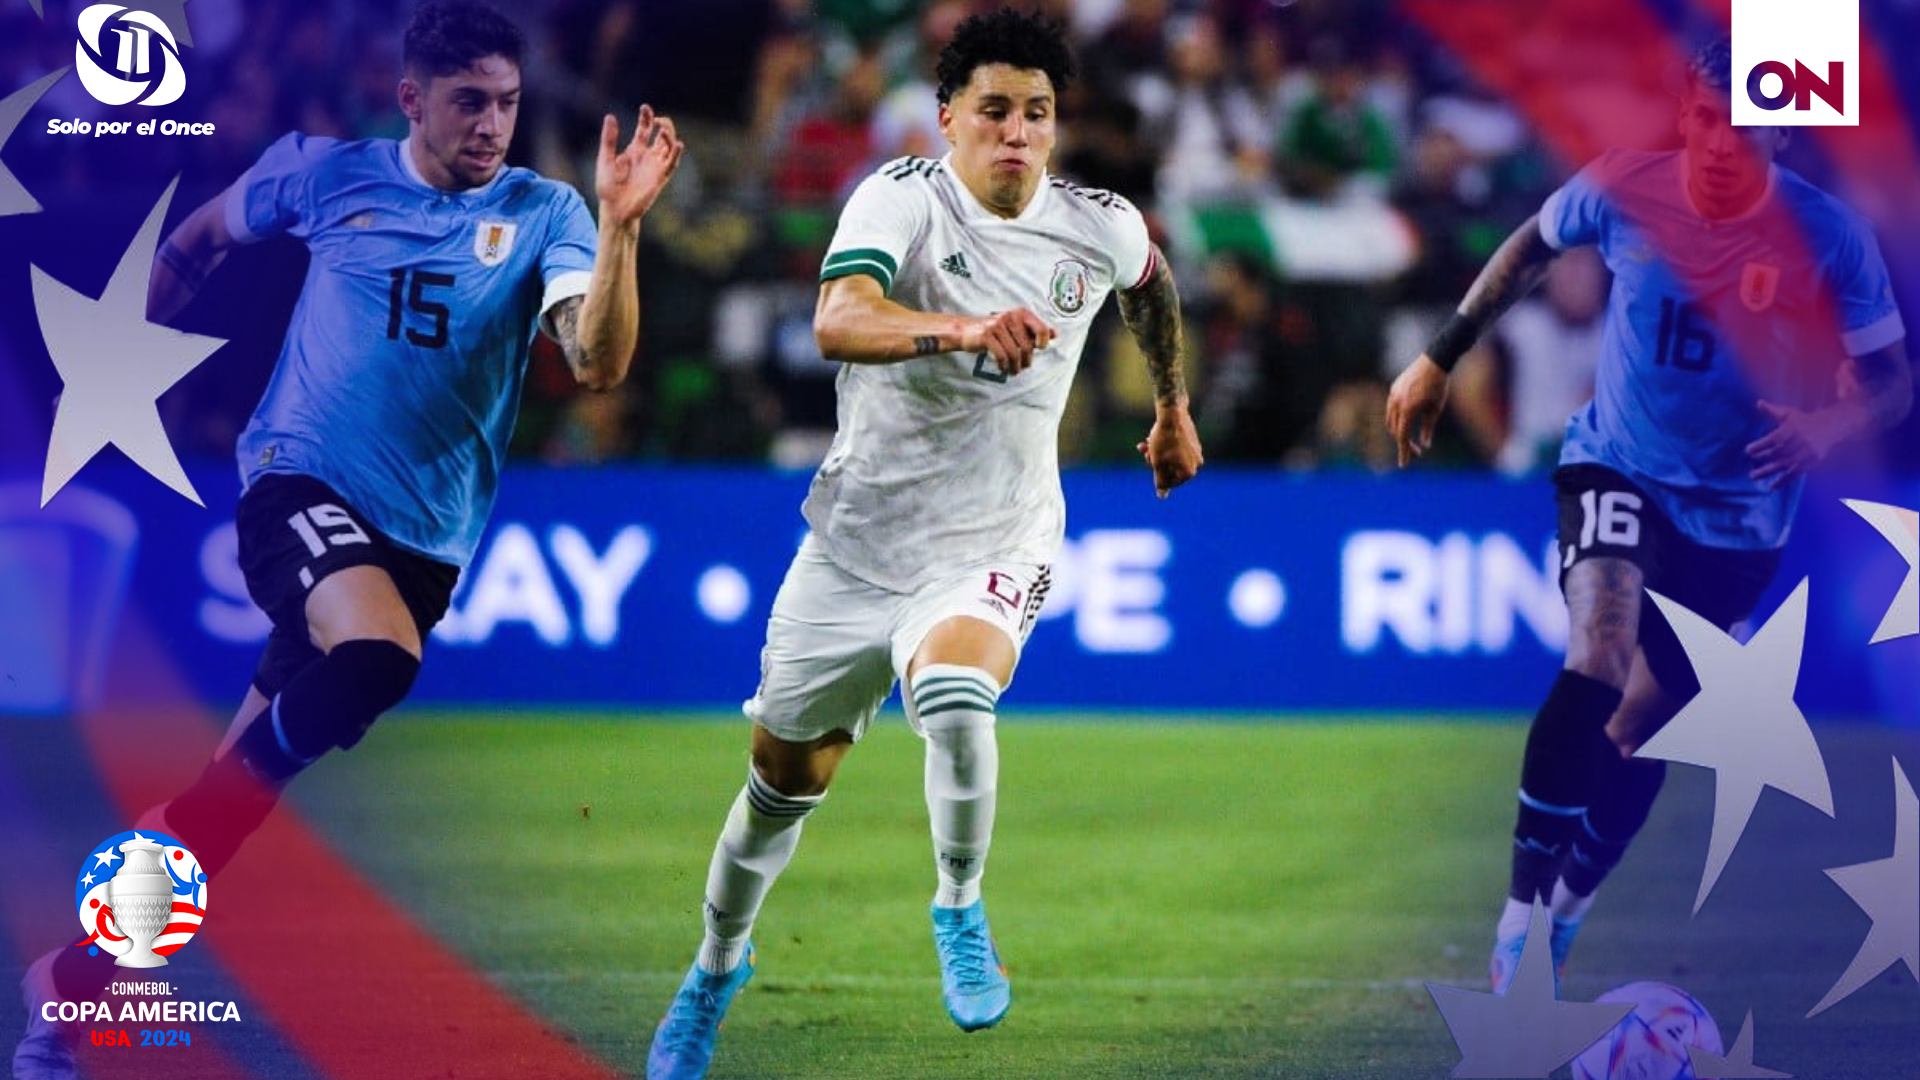 En un enfrentamiento cargado de historia y rivalidad, la Selección México de Fútbol se enfrentará esta noche a su similar de Uruguay en un partido amistoso que promete emociones y revancha.